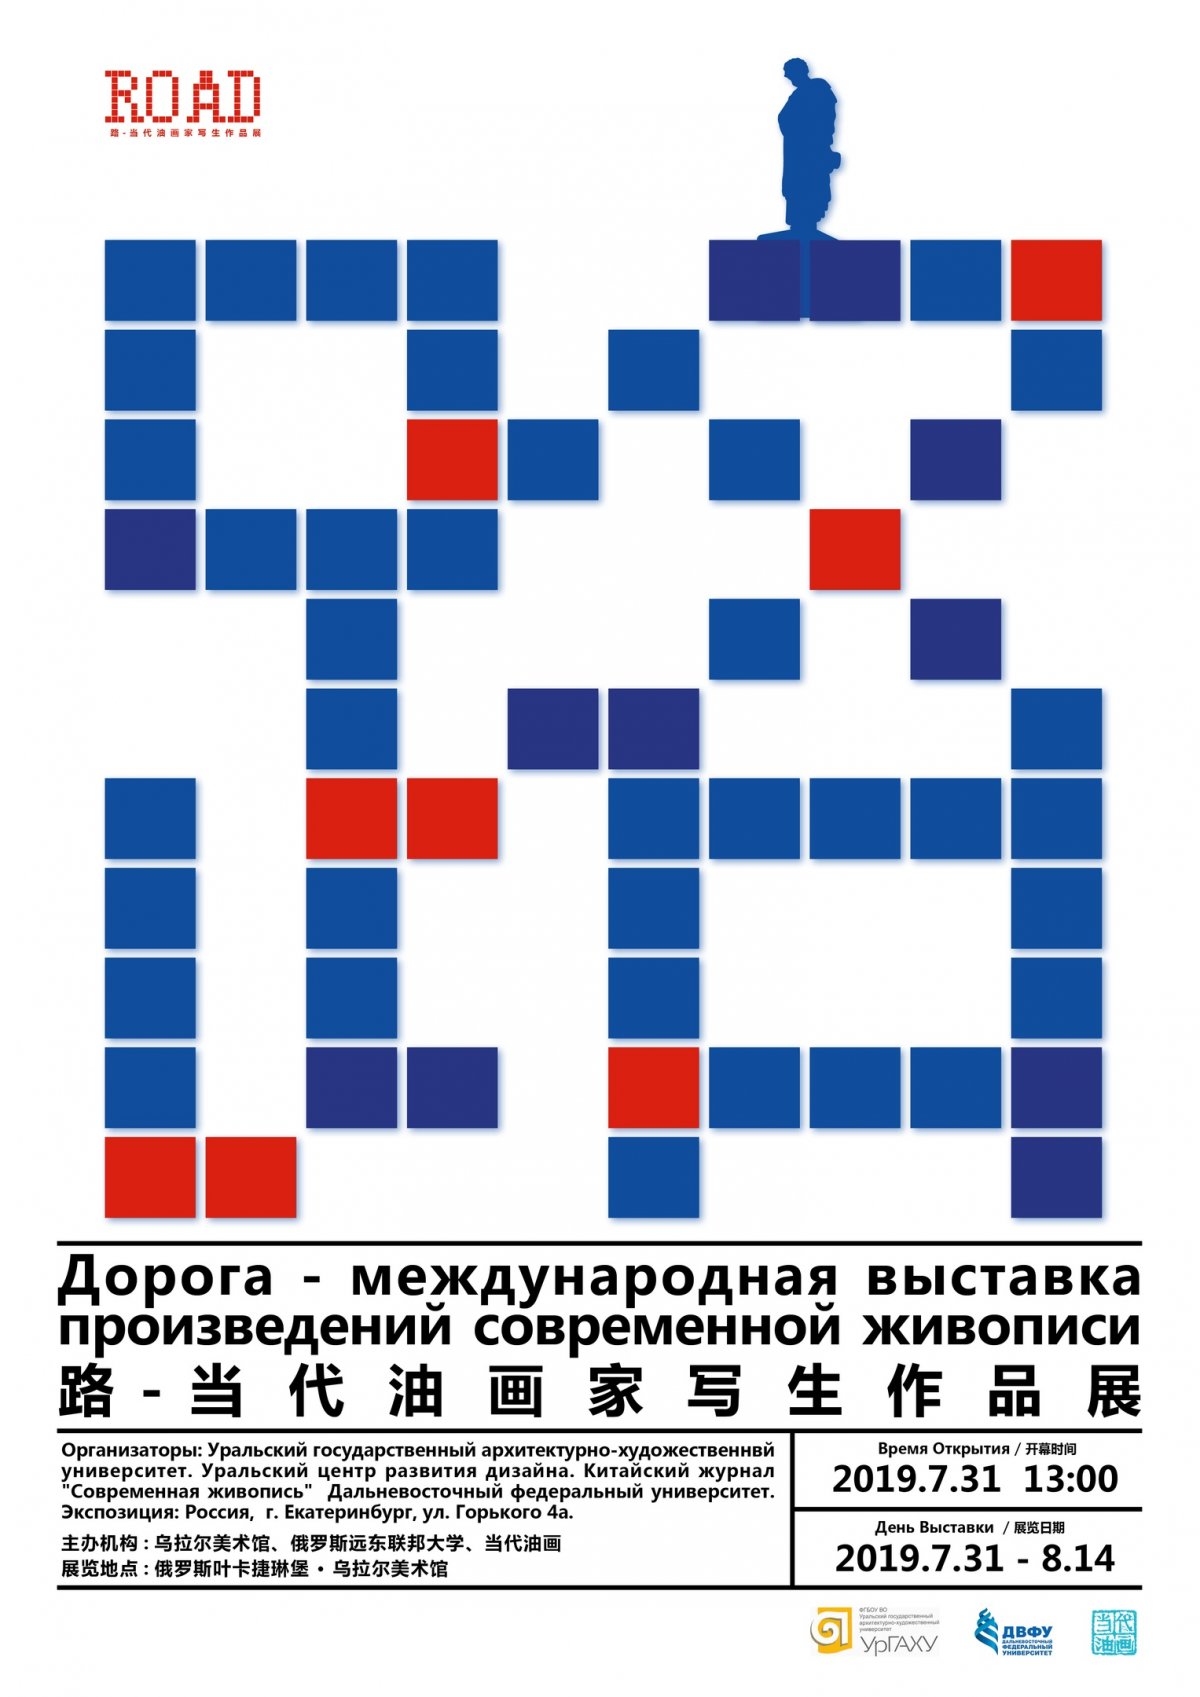 Международная выставка произведений современной живописи России и Китая откроется в Дизайн-центре УрГАХУ 31 июля.